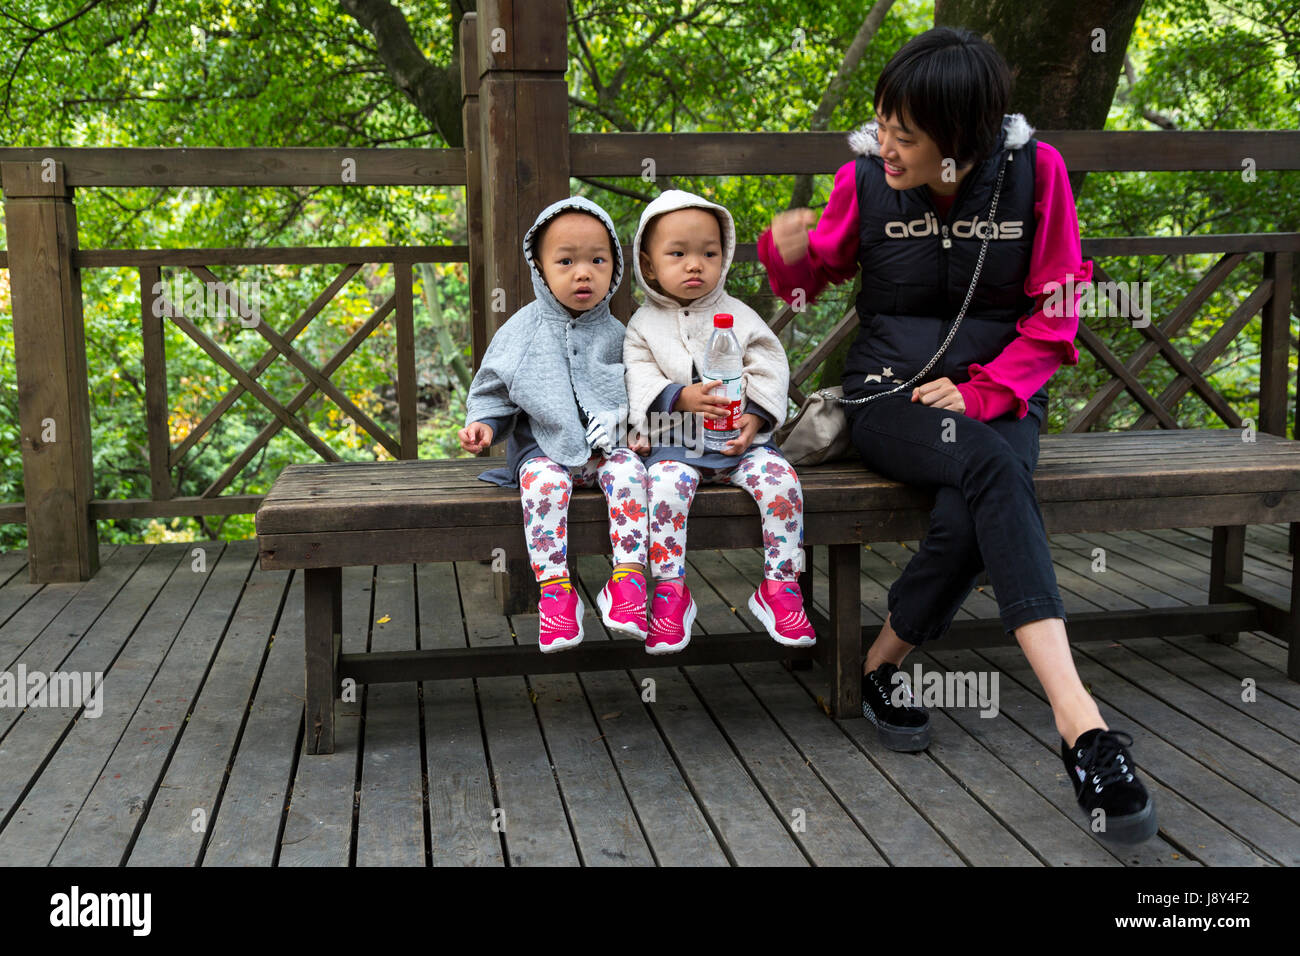 La cueva de la Flauta de Junco, la región de Guangxi, China. Dos jóvenes Dos niñas con su madre. Foto de stock